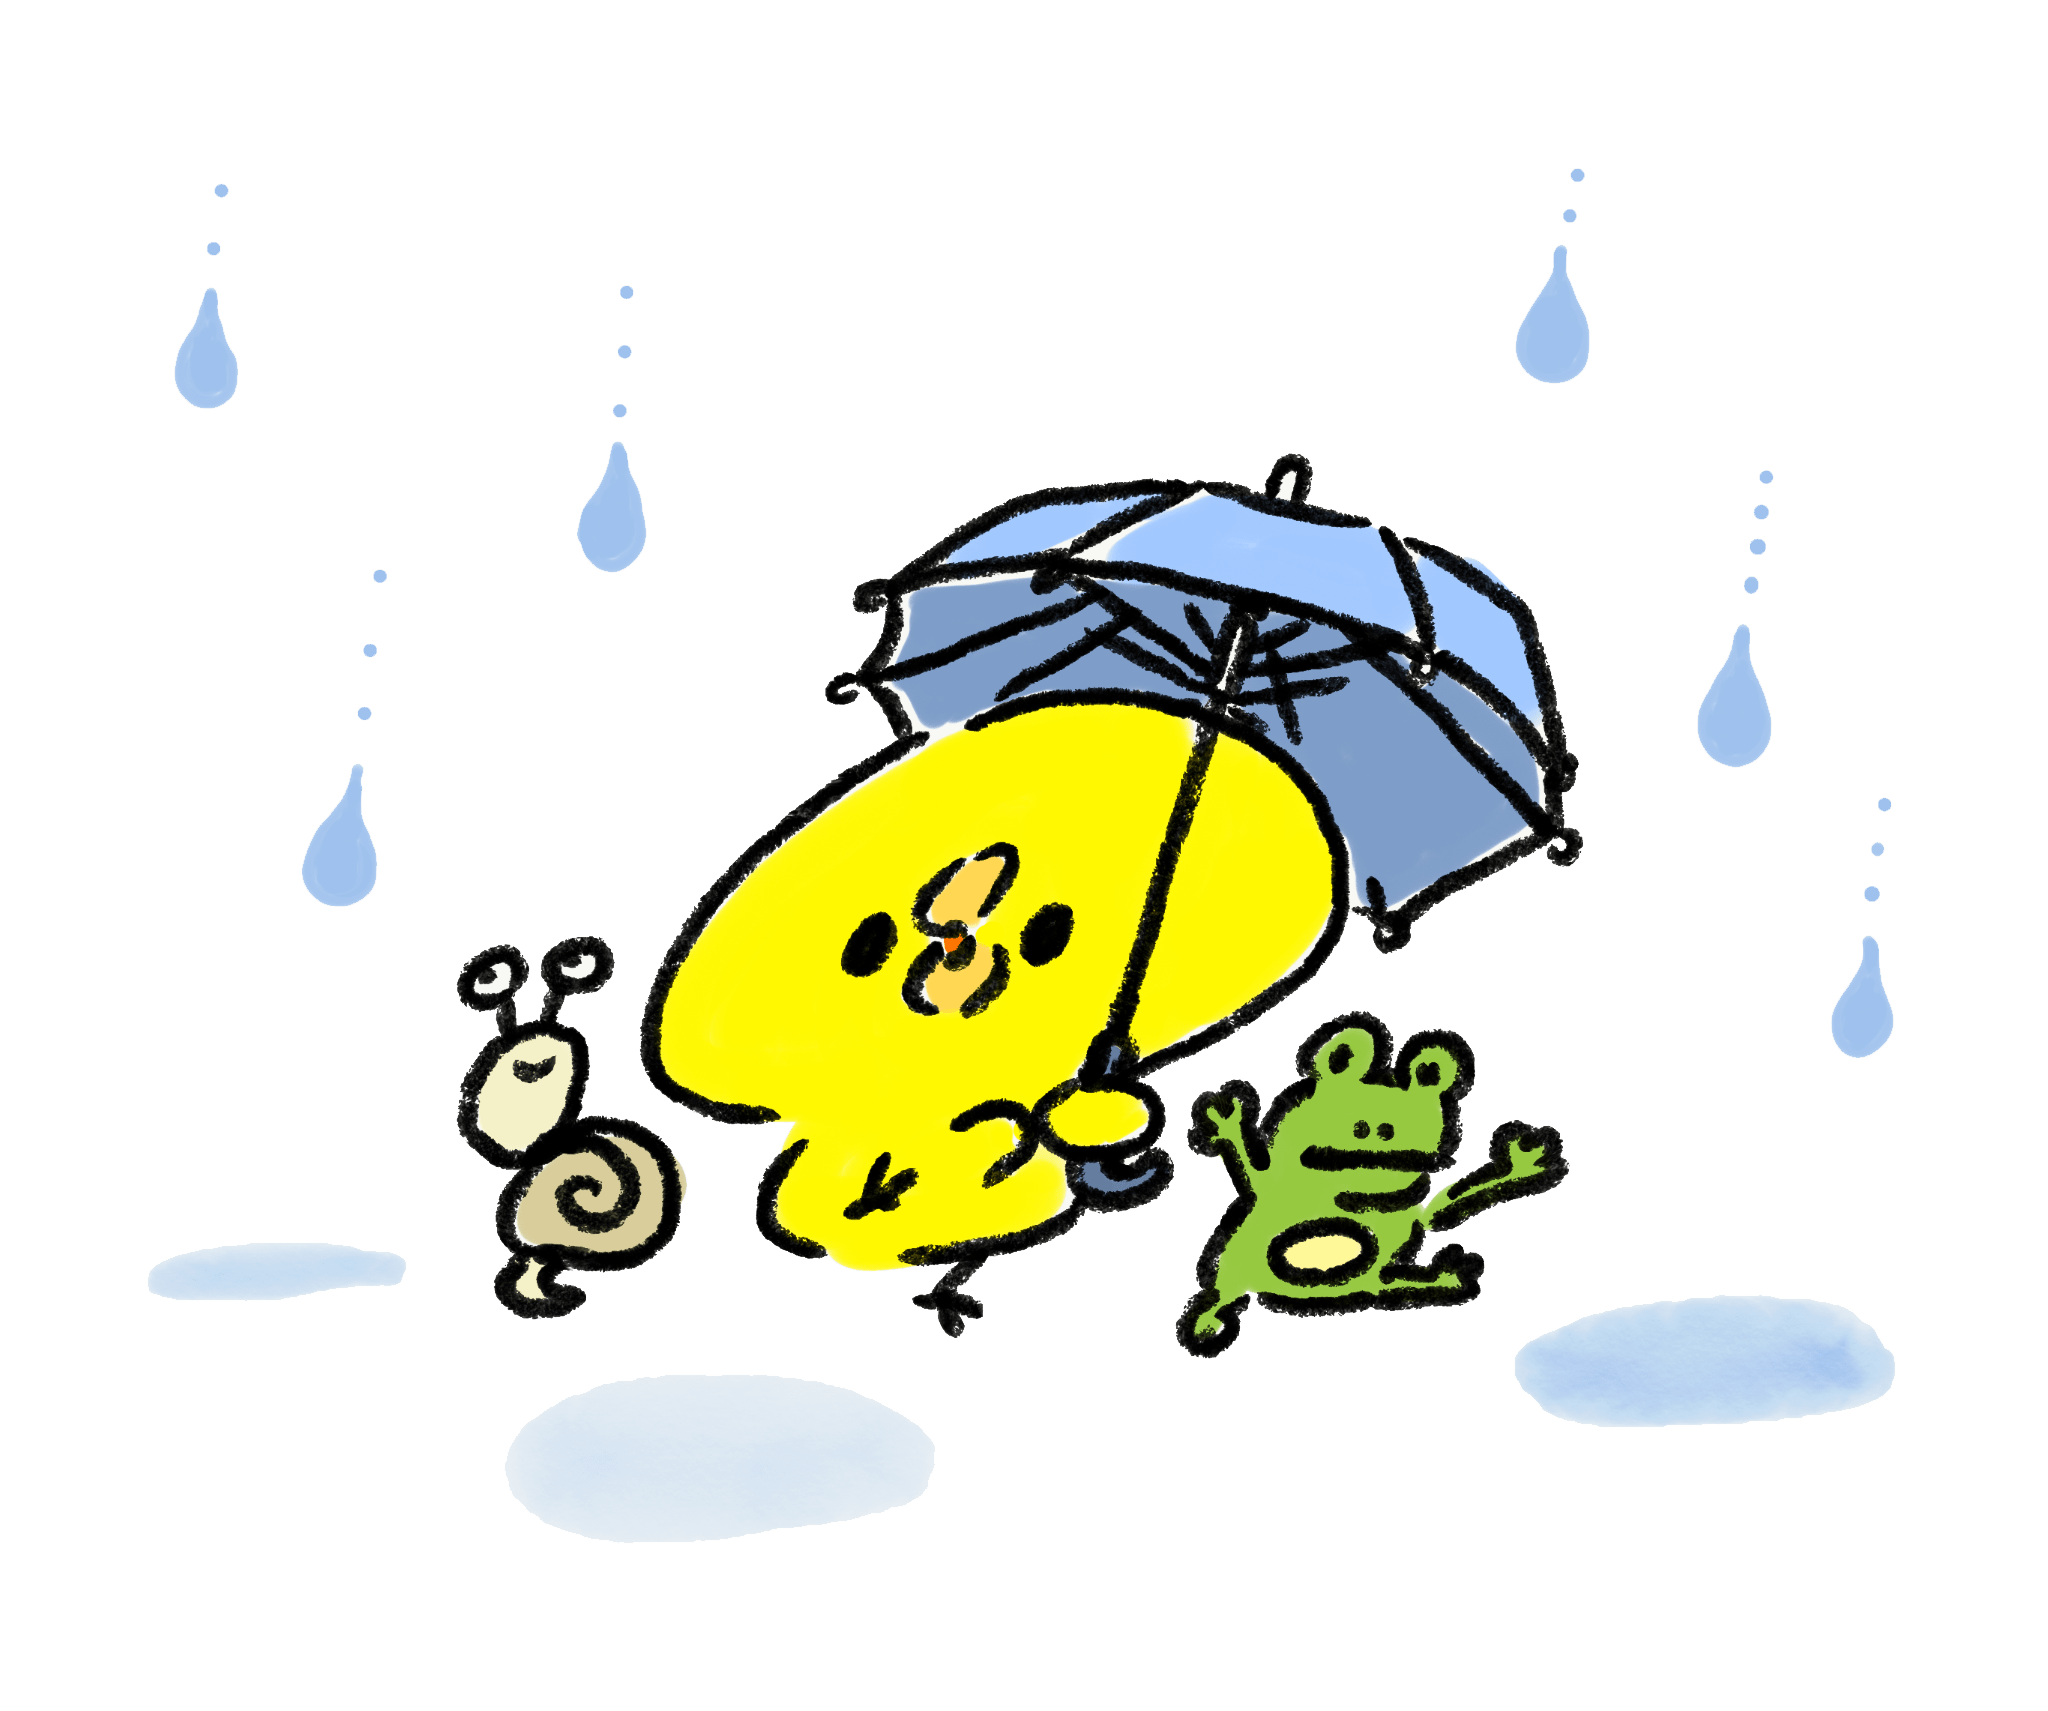 雨中跳舞的小鸡、青蛙和蜗牛